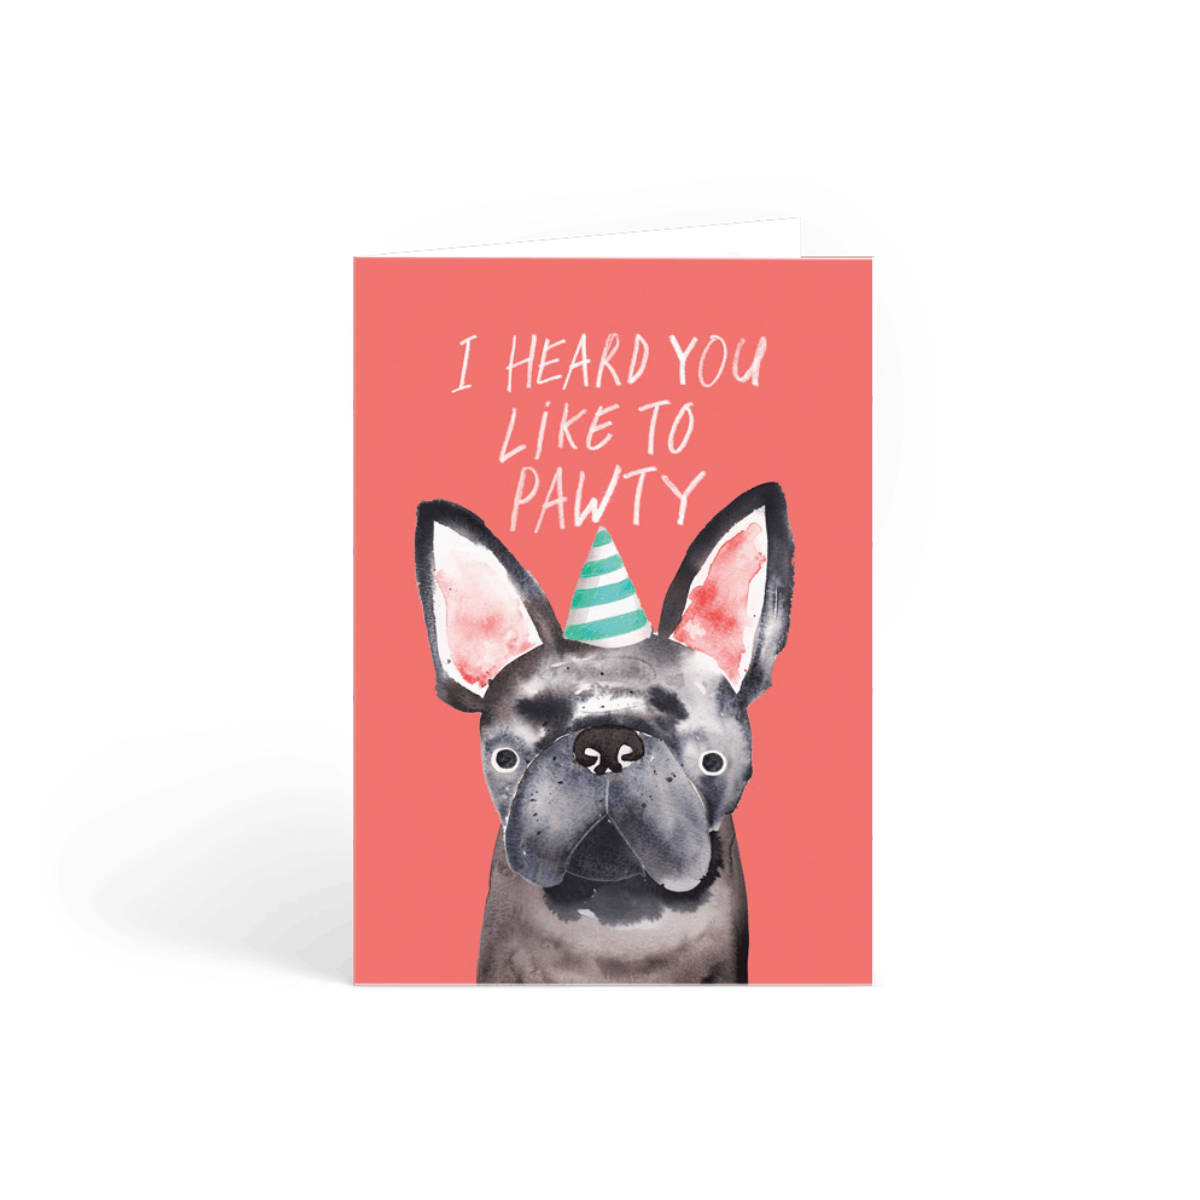 Pawtie Frenchie French Bulldog Birthday Card Papier